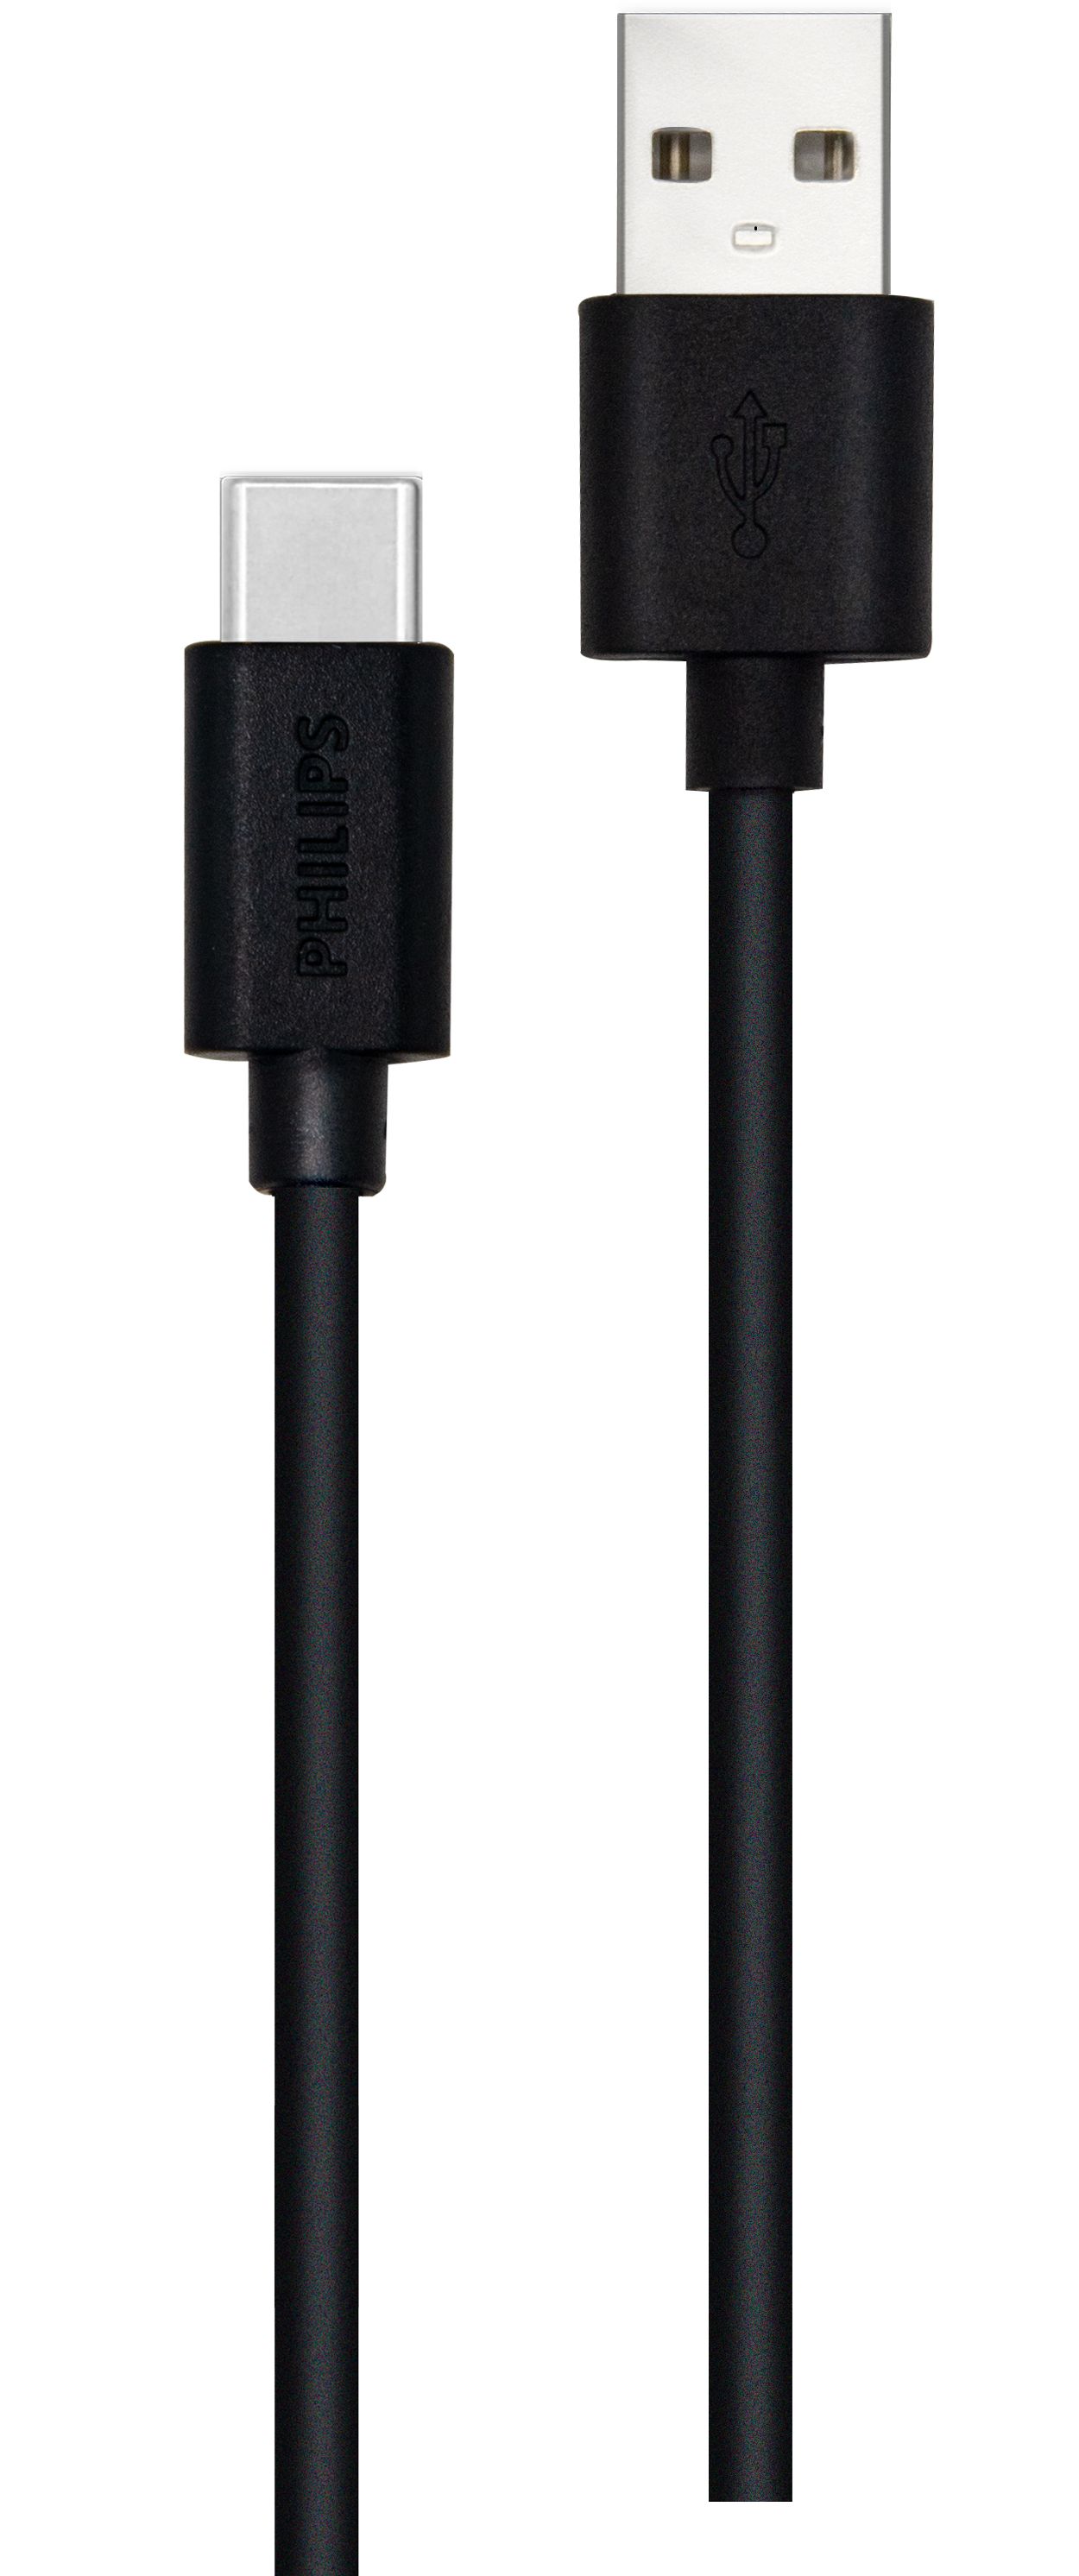 Cáp nối USB-A đến USB-C dài 2 m